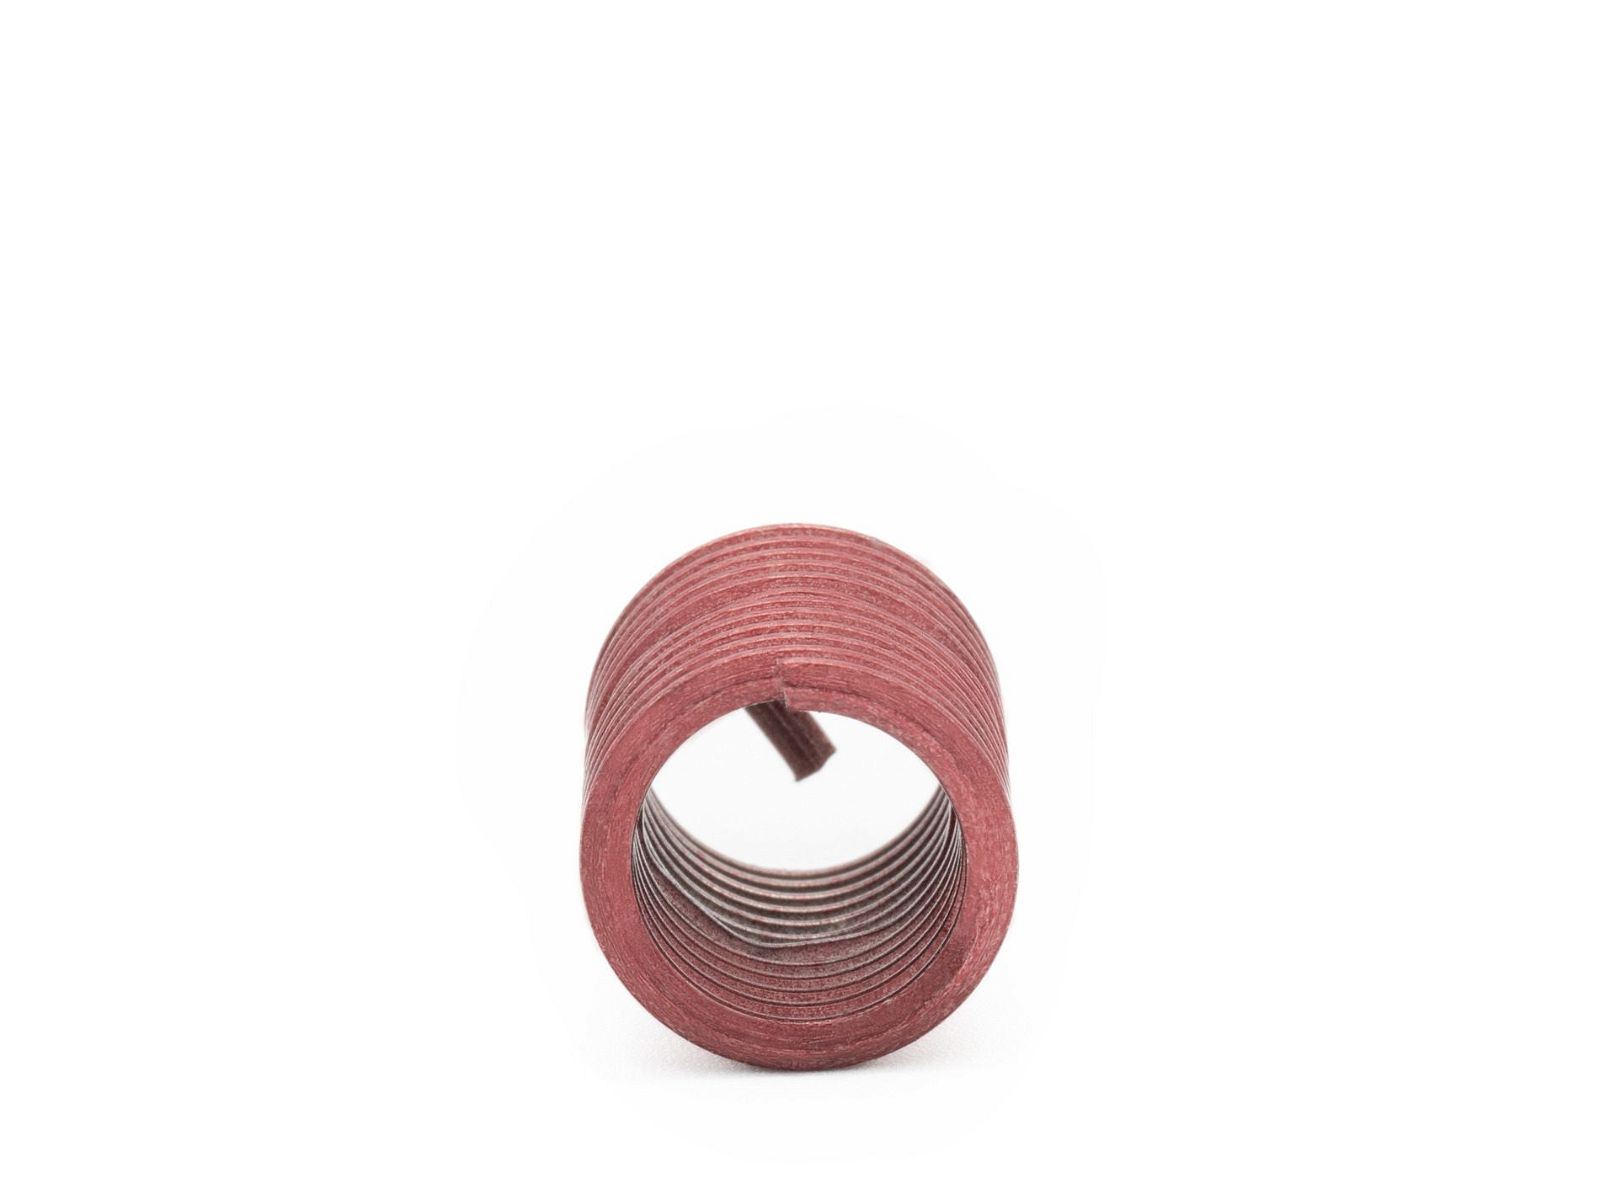 BaerCoil Drahtgewindeeinsätze UNC 1/4 x 20 - 2,0 D (12,7 mm) - screw grip (schraubensichernd) - 100 Stück